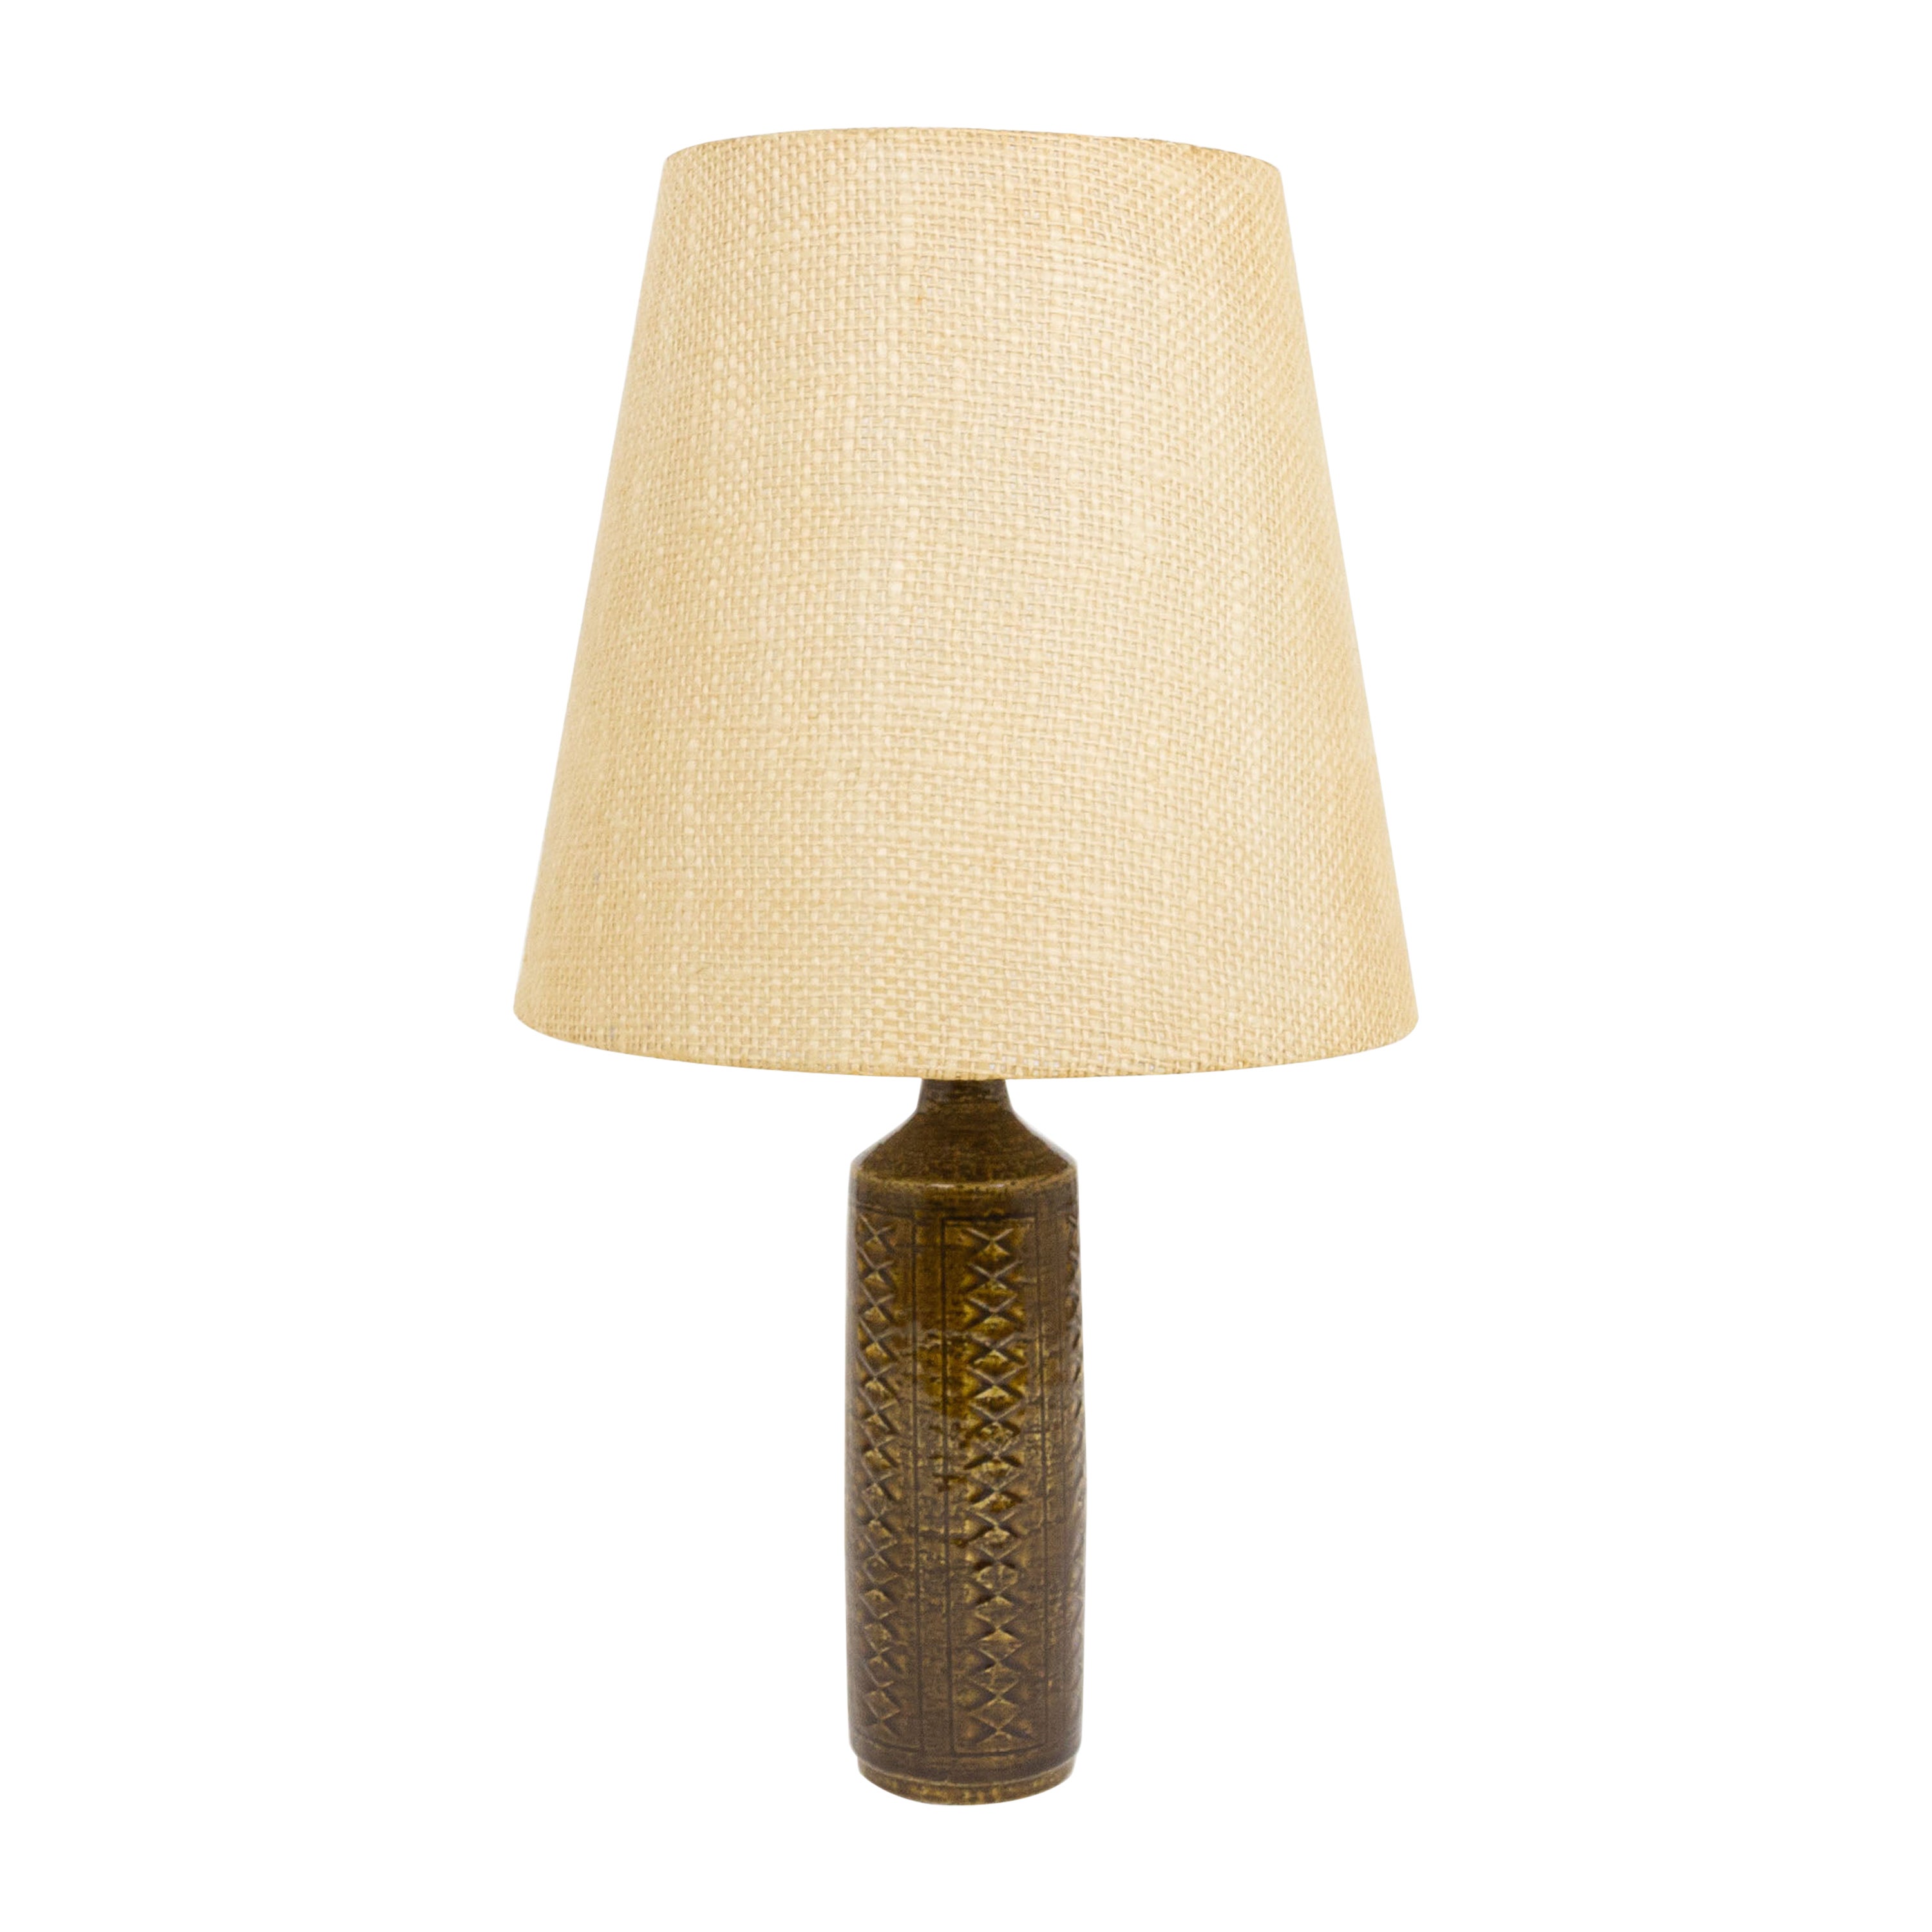 Chestnut Brown DL/27 table lamp by Linnemann-Schmidt for Palshus, 1960s